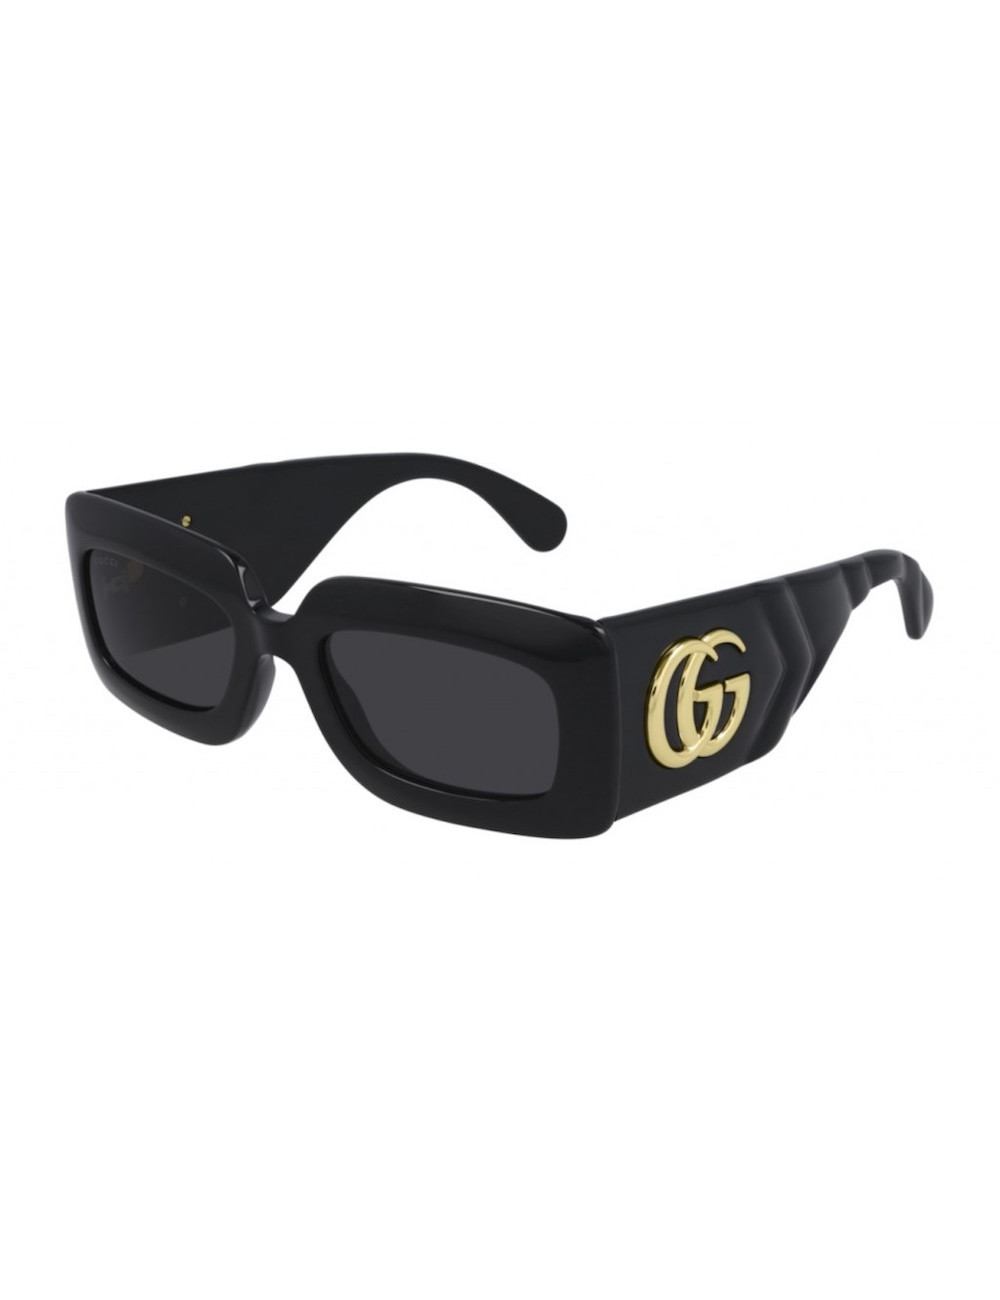 Gucci Sunglasses - Women's accessories